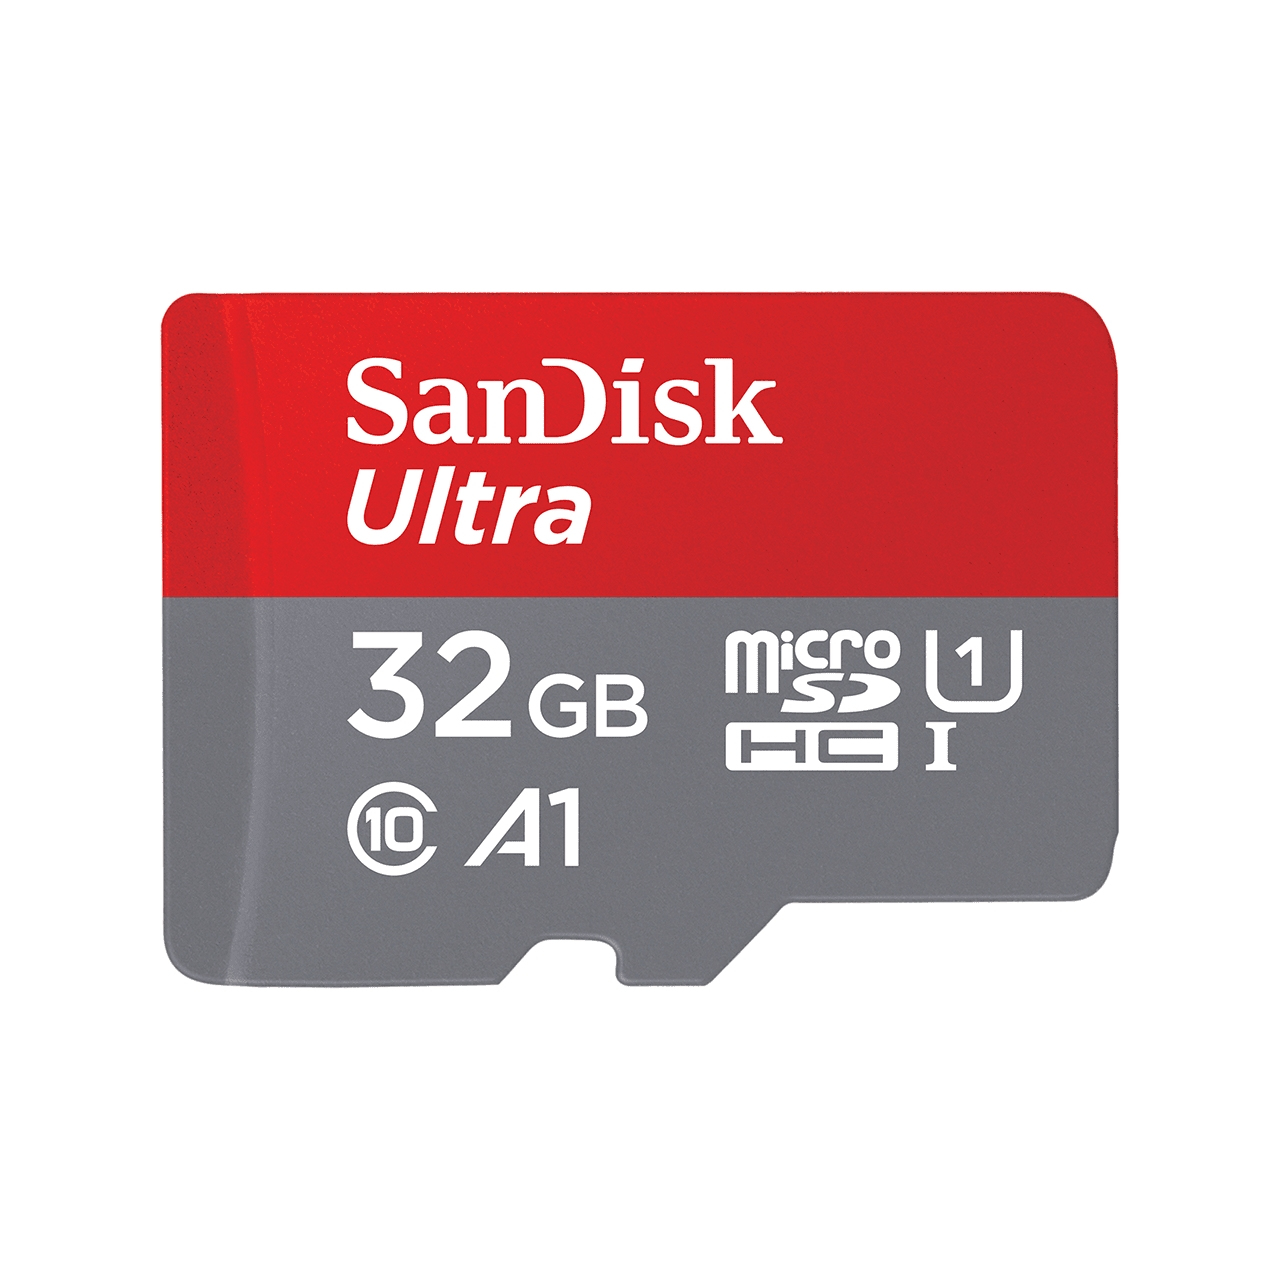 SanDisk Ultra memoria flash 32 GB MicroSDHC Clase 10